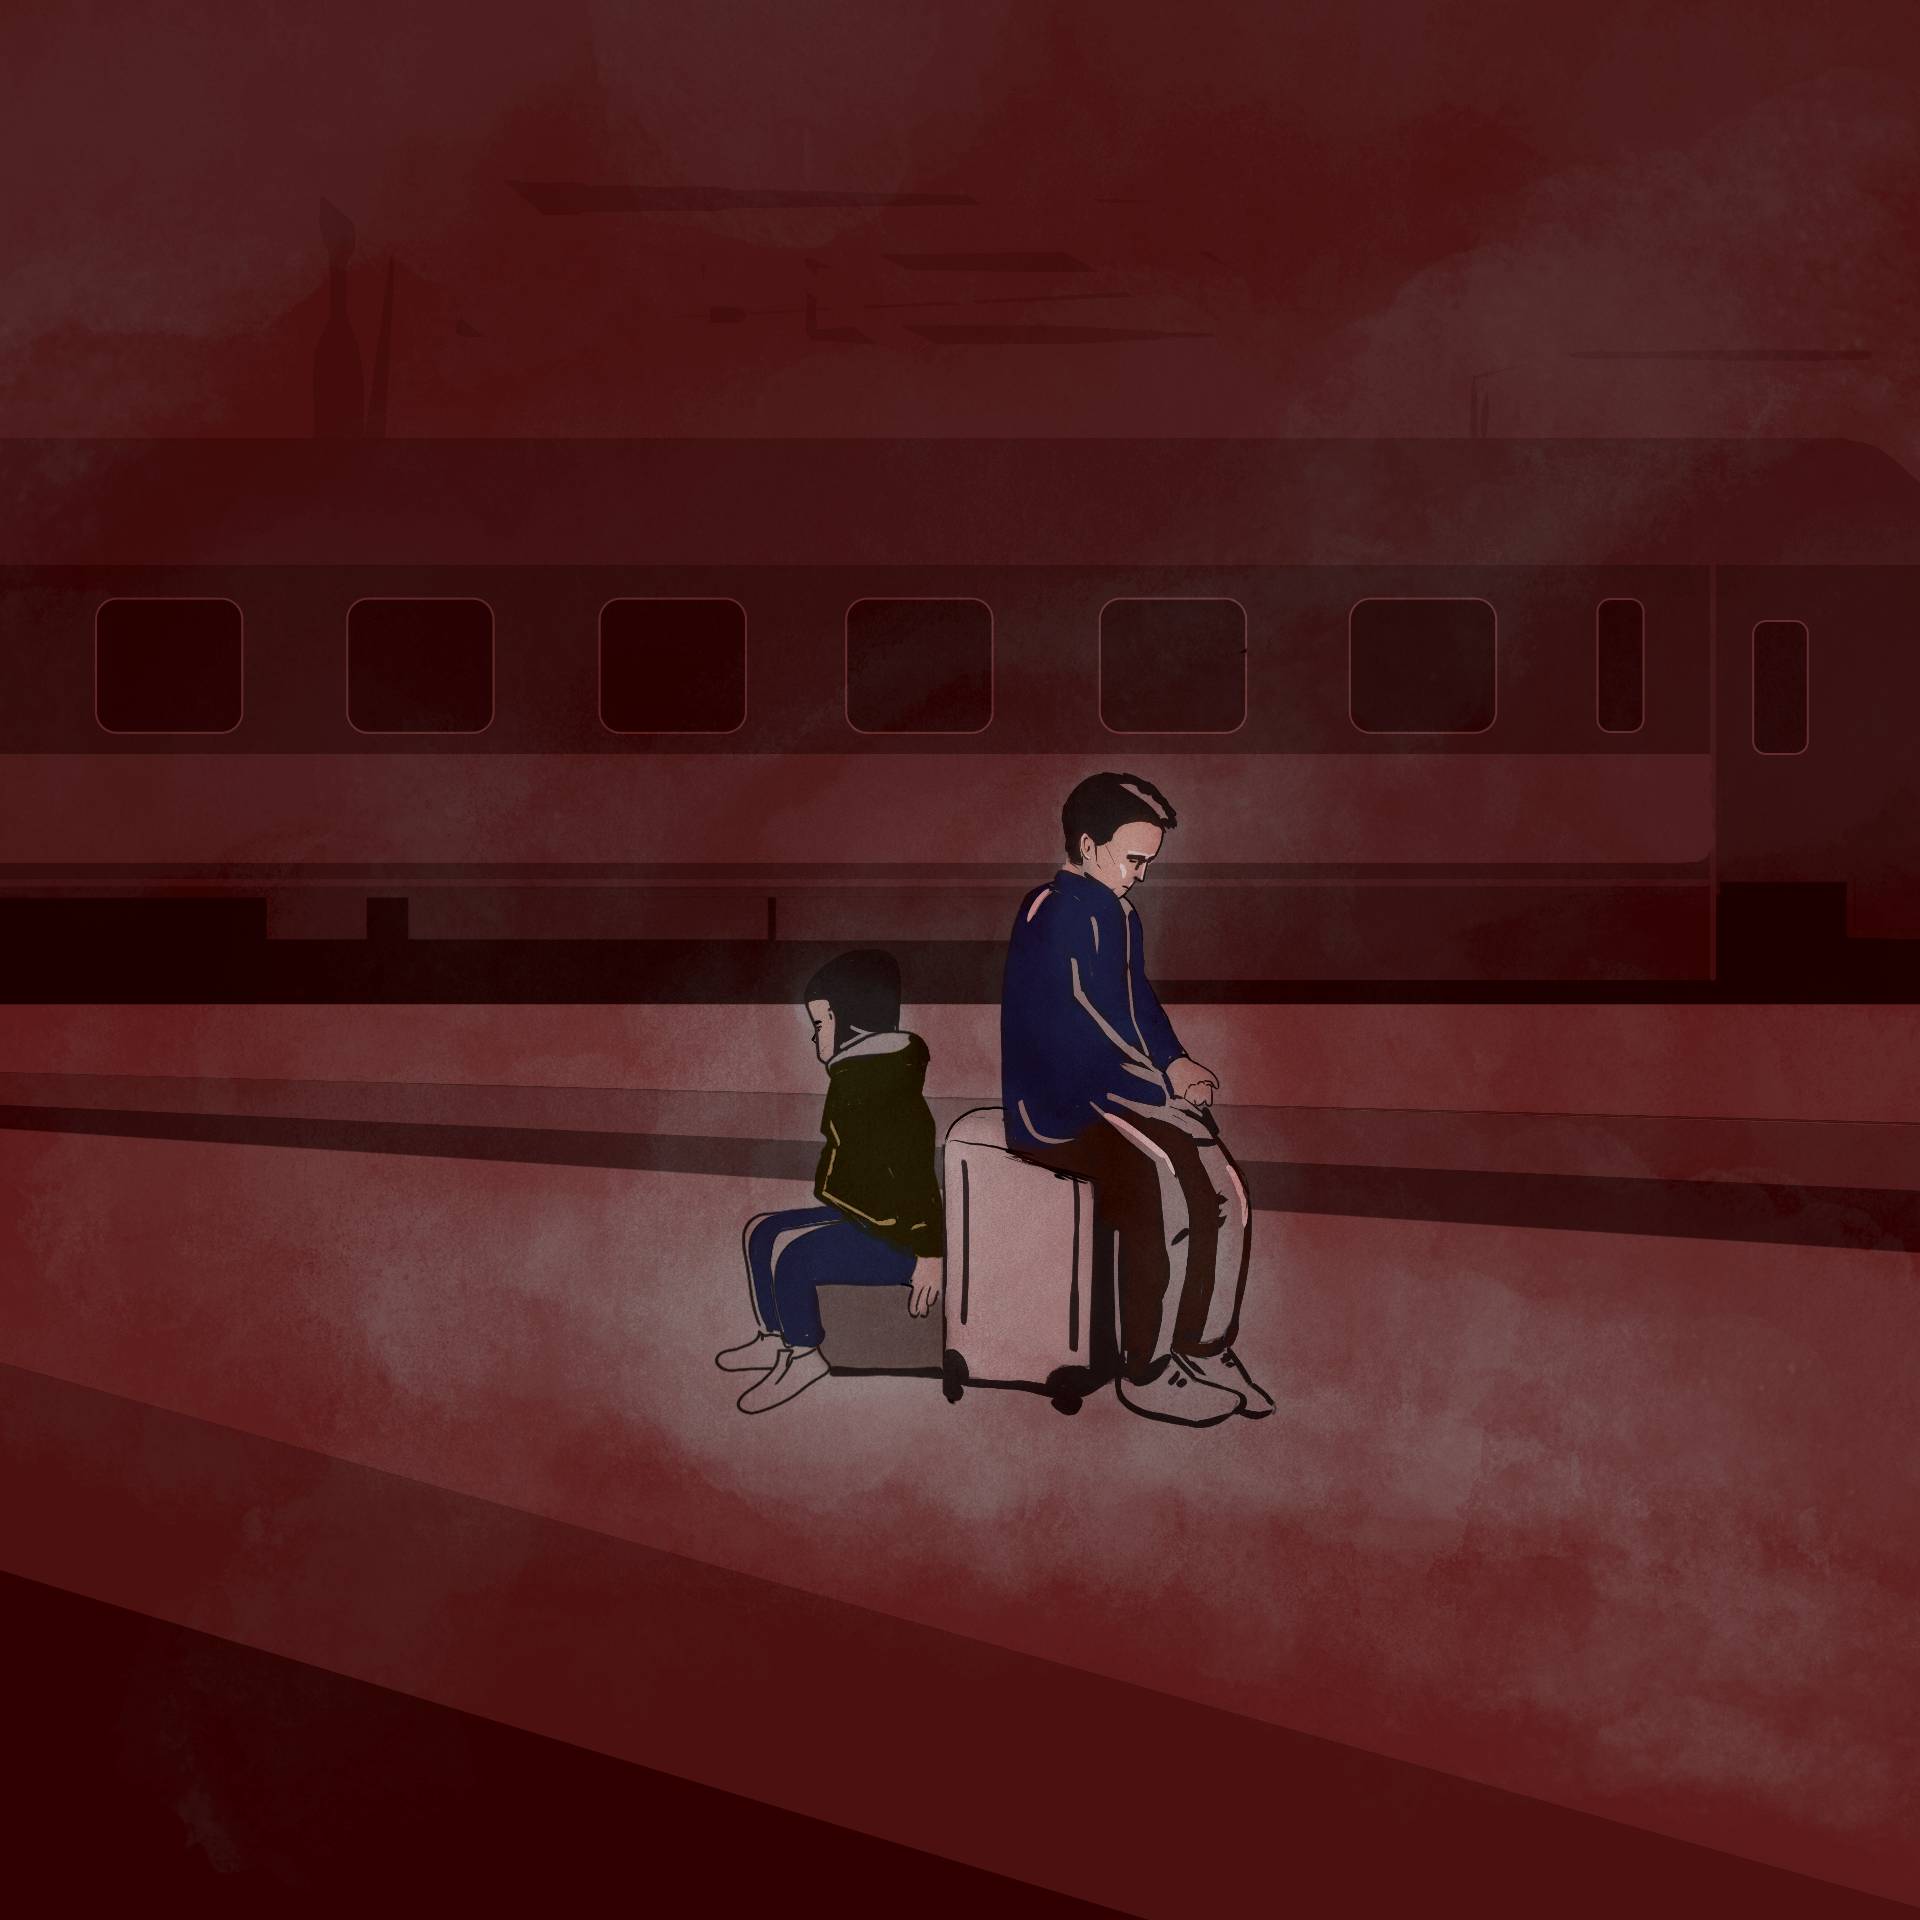 Ilustracja przedstawia dwójkę chłopców – nastolatka i kilkulatka – siedzących na walizkach na peronie kolejowym